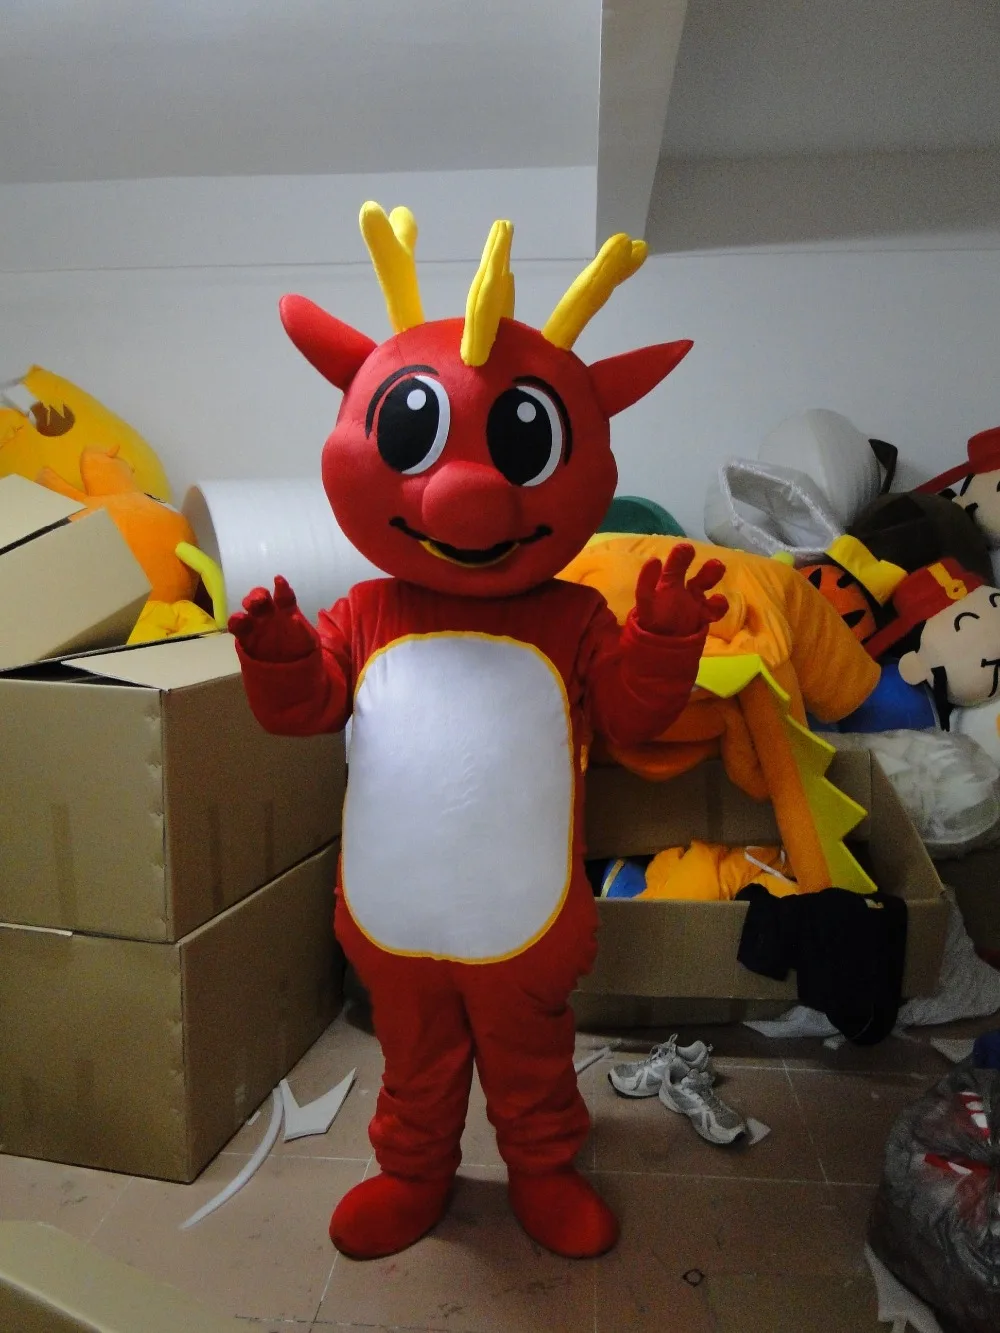 De înaltă calitate vânzări la cald Red Dragon mascota costum transport gratuit haine